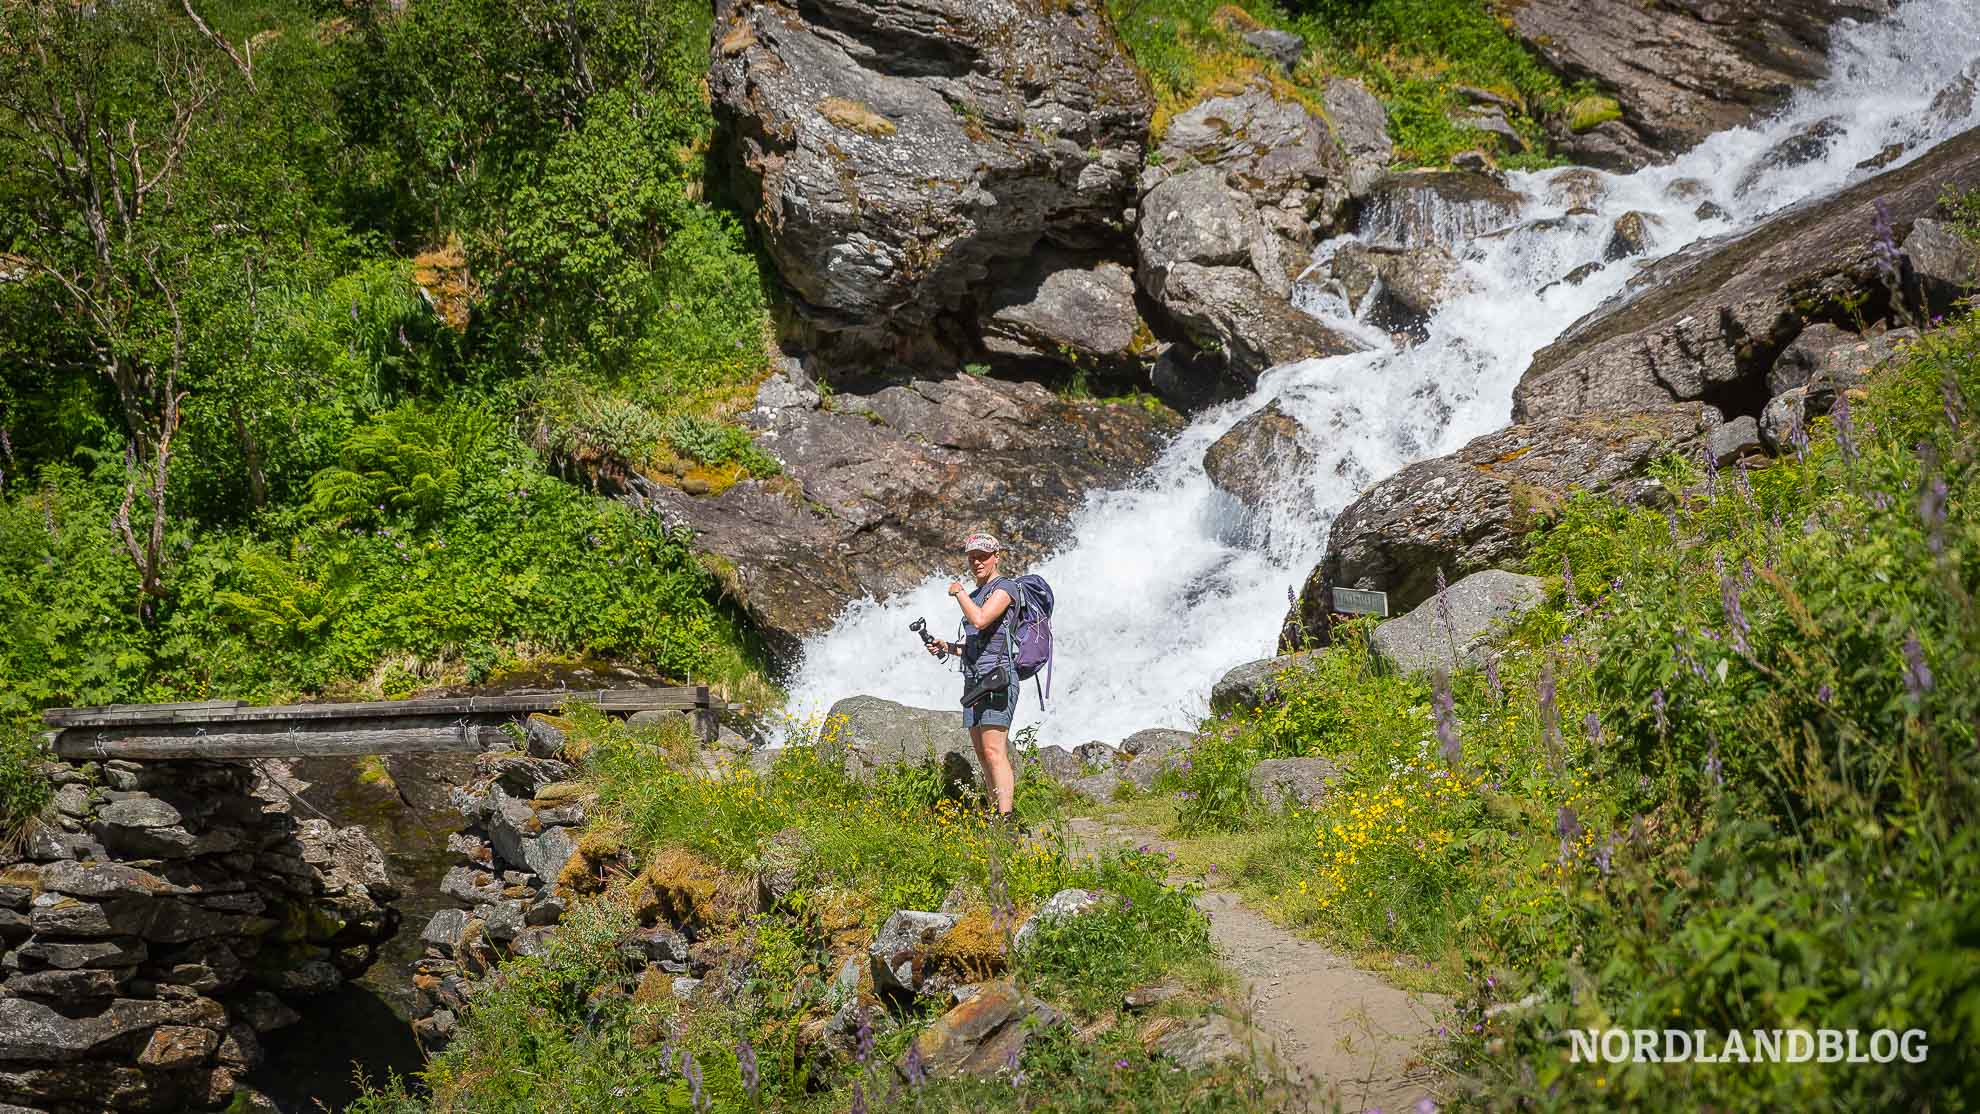 Wanderung durch das Aurlandsdalen am Sognefjord in Norwegen (Nordlandblog)